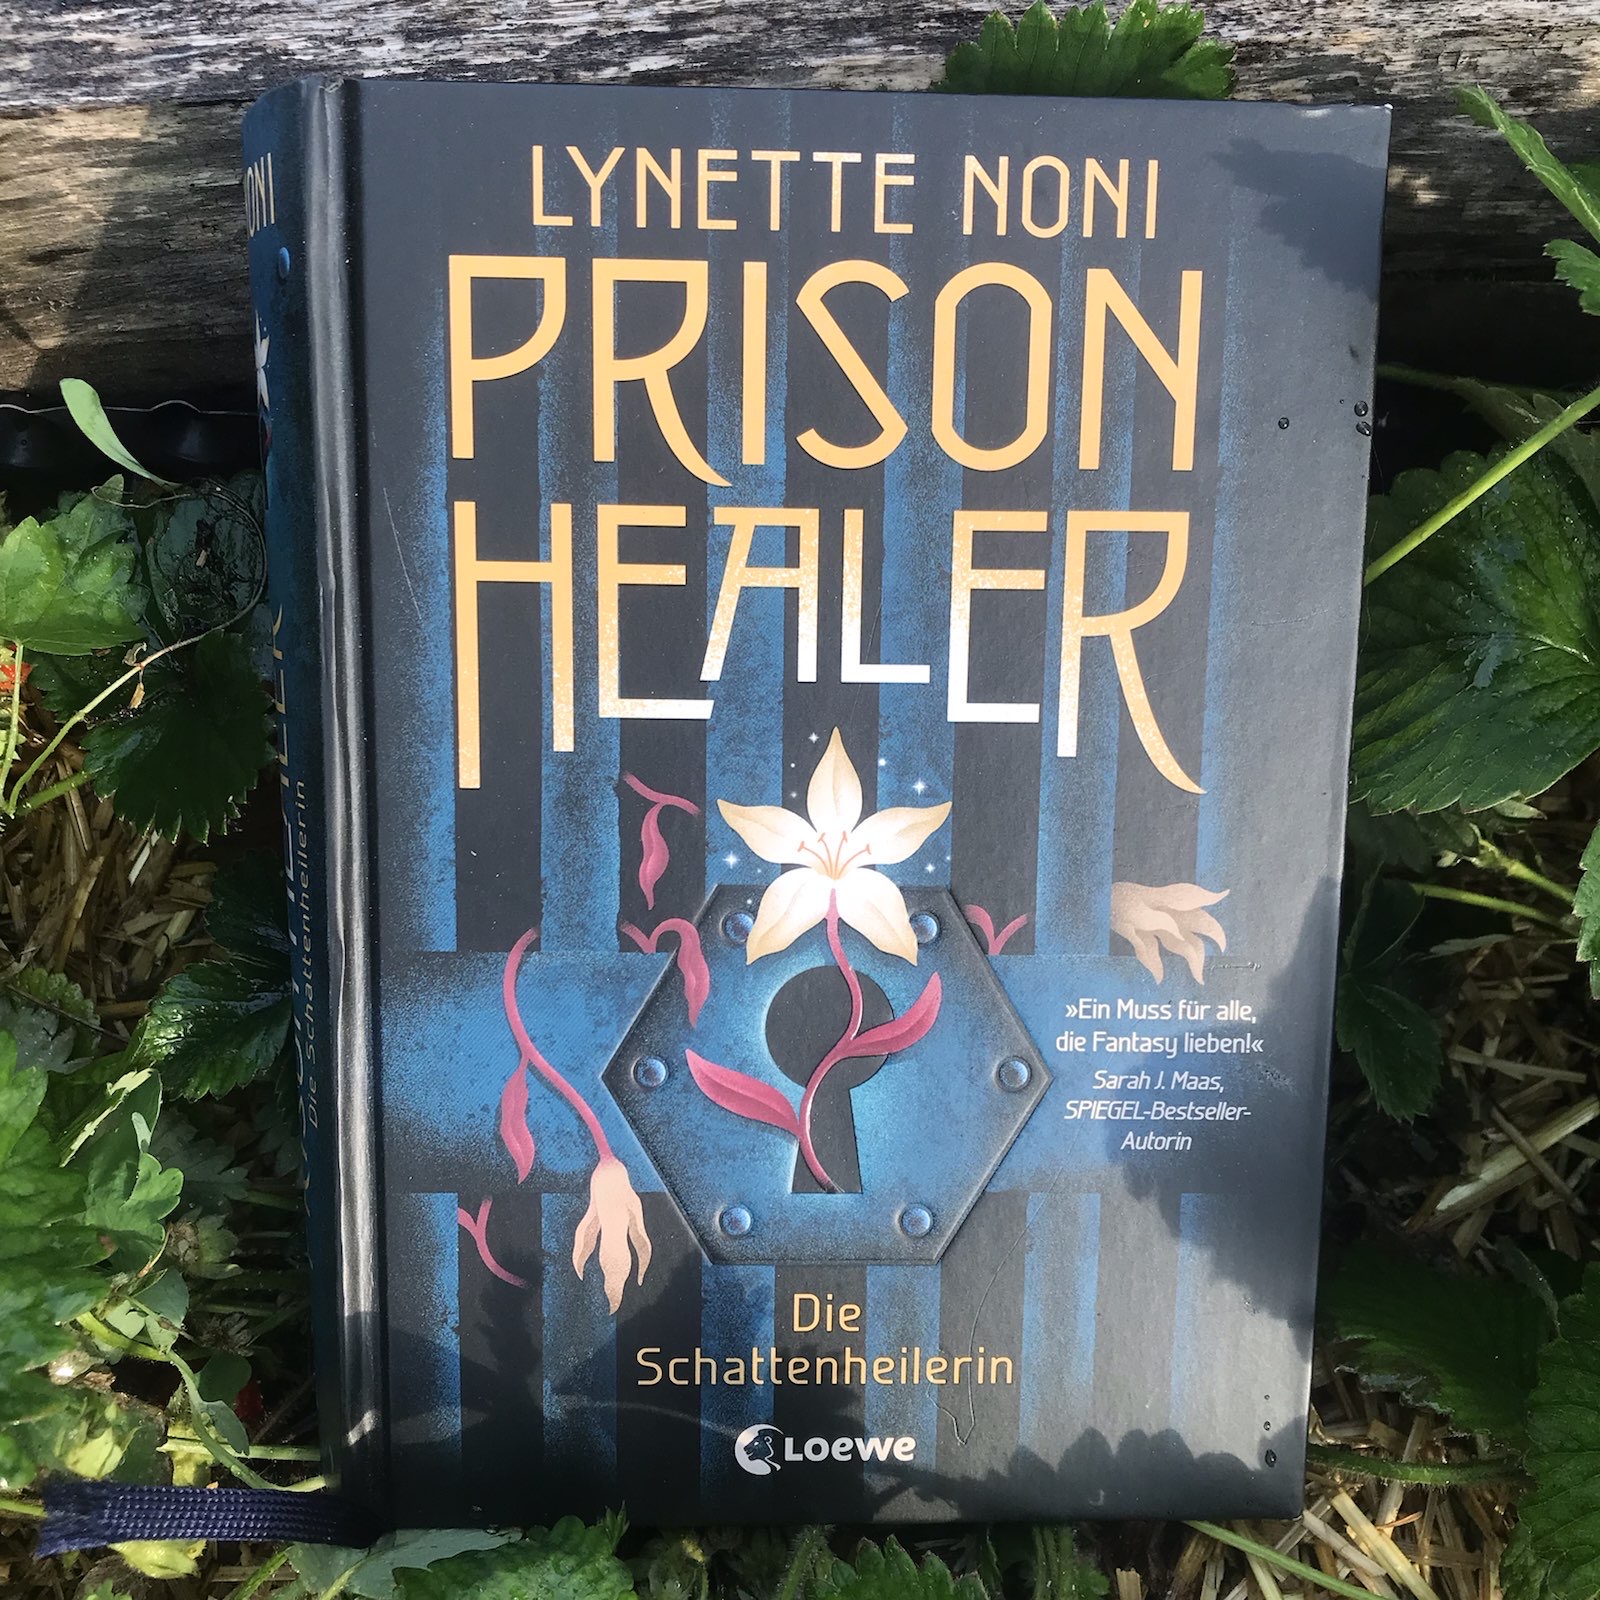 Prison Healer – Die Schattenheilerin